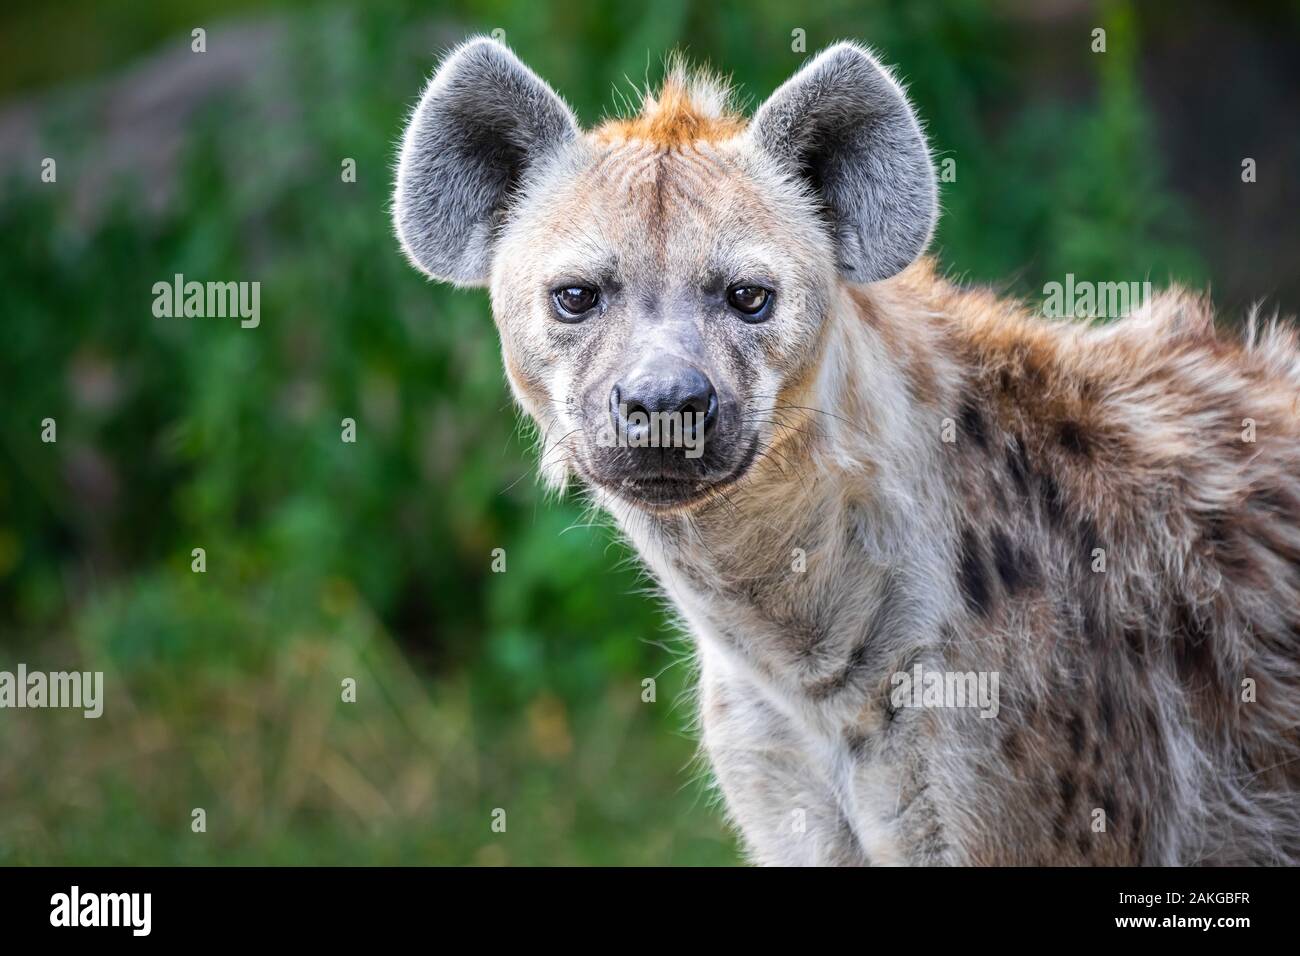 Nahaufnahme einer wilden Hyäne, die auf die Kamera starrt Vor einem grünen Bokeh Hintergrund Stockfoto